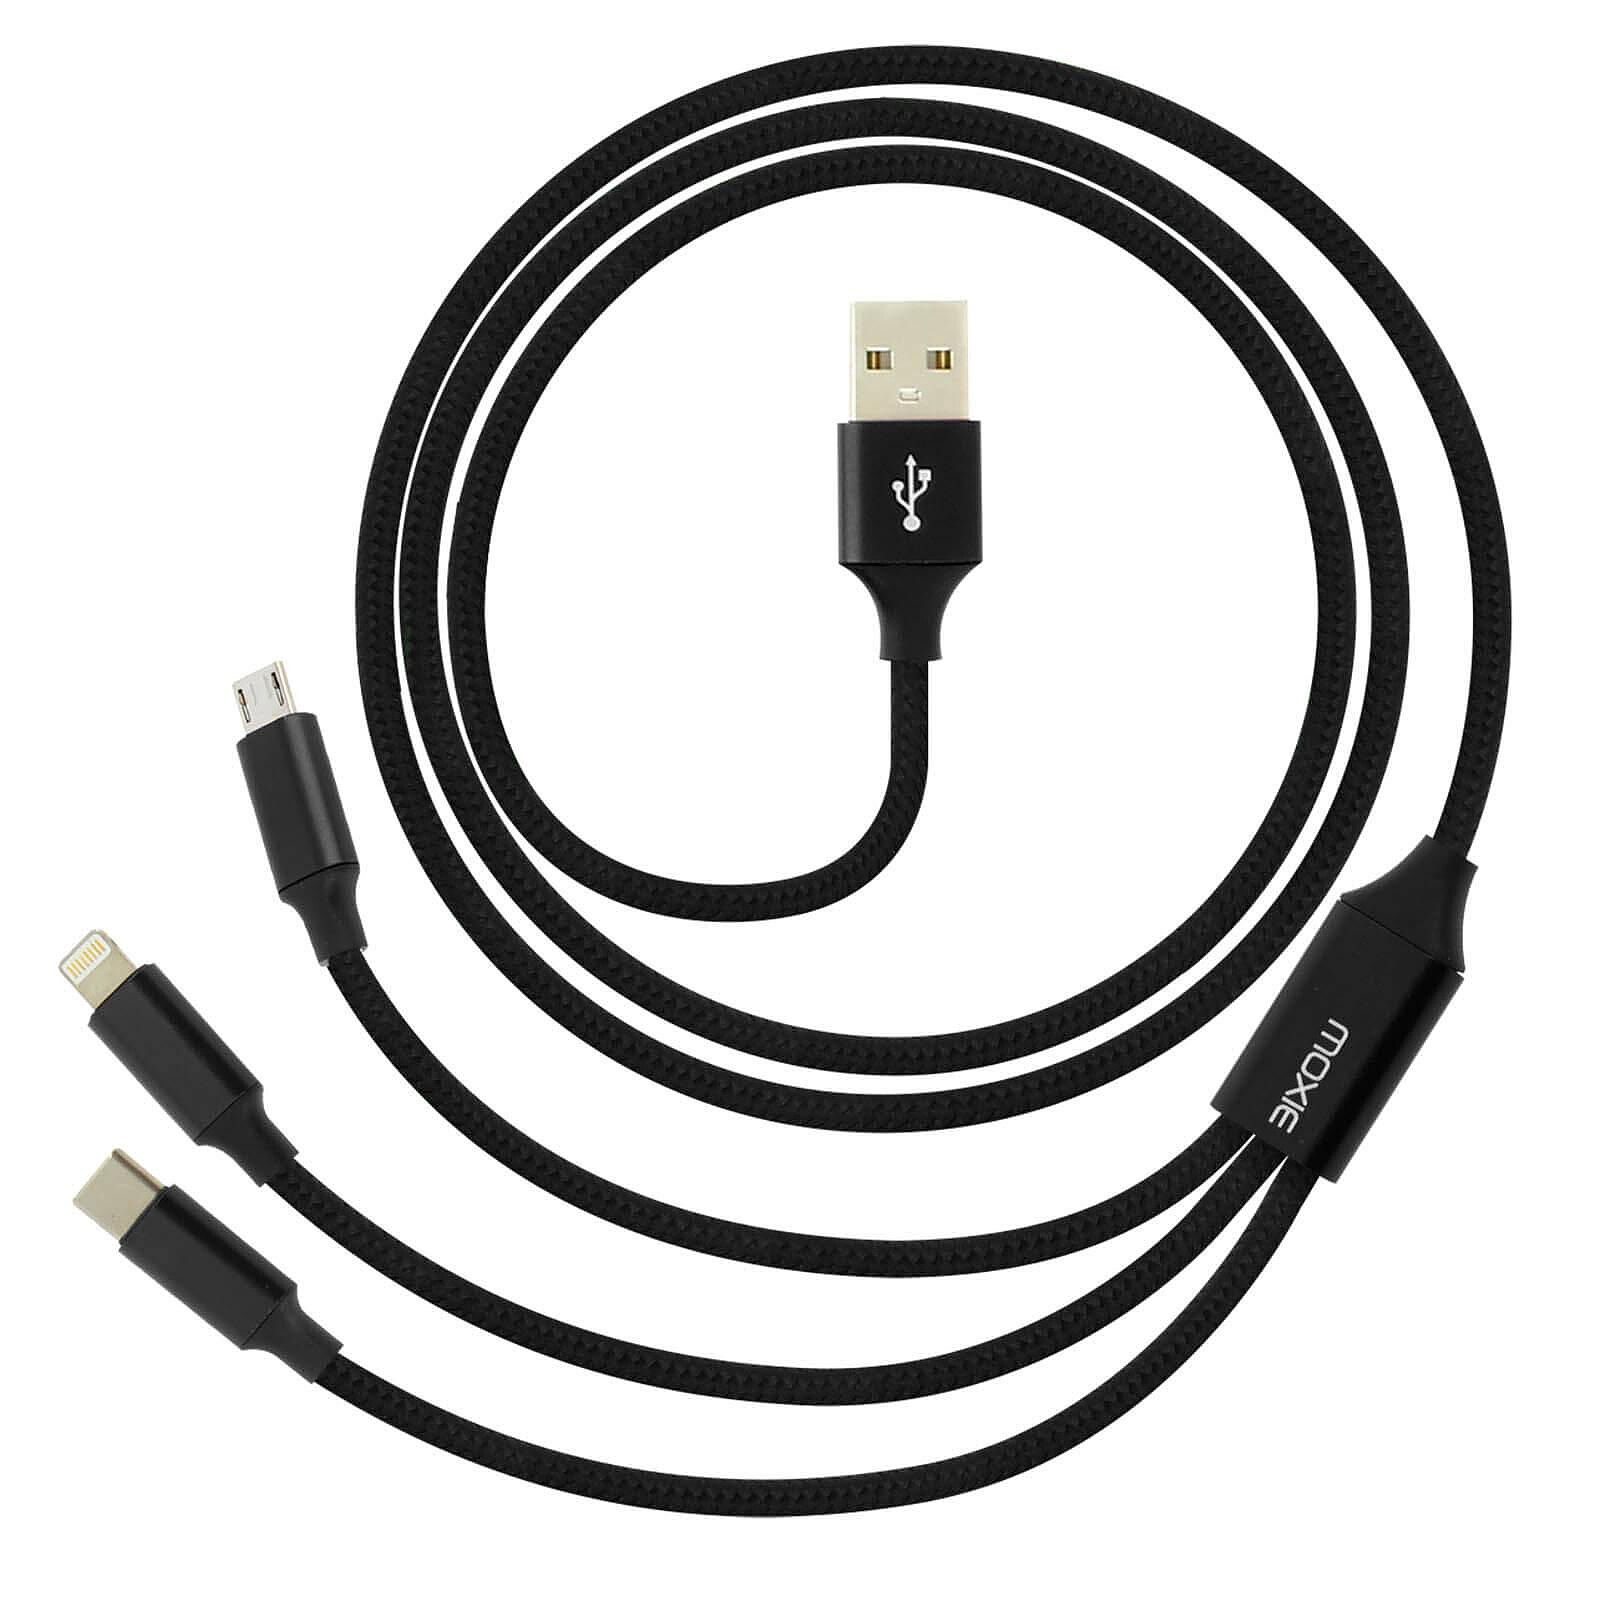 Câble de chargement et transfert de données USB-C vers USB-C 3.1, Belkin